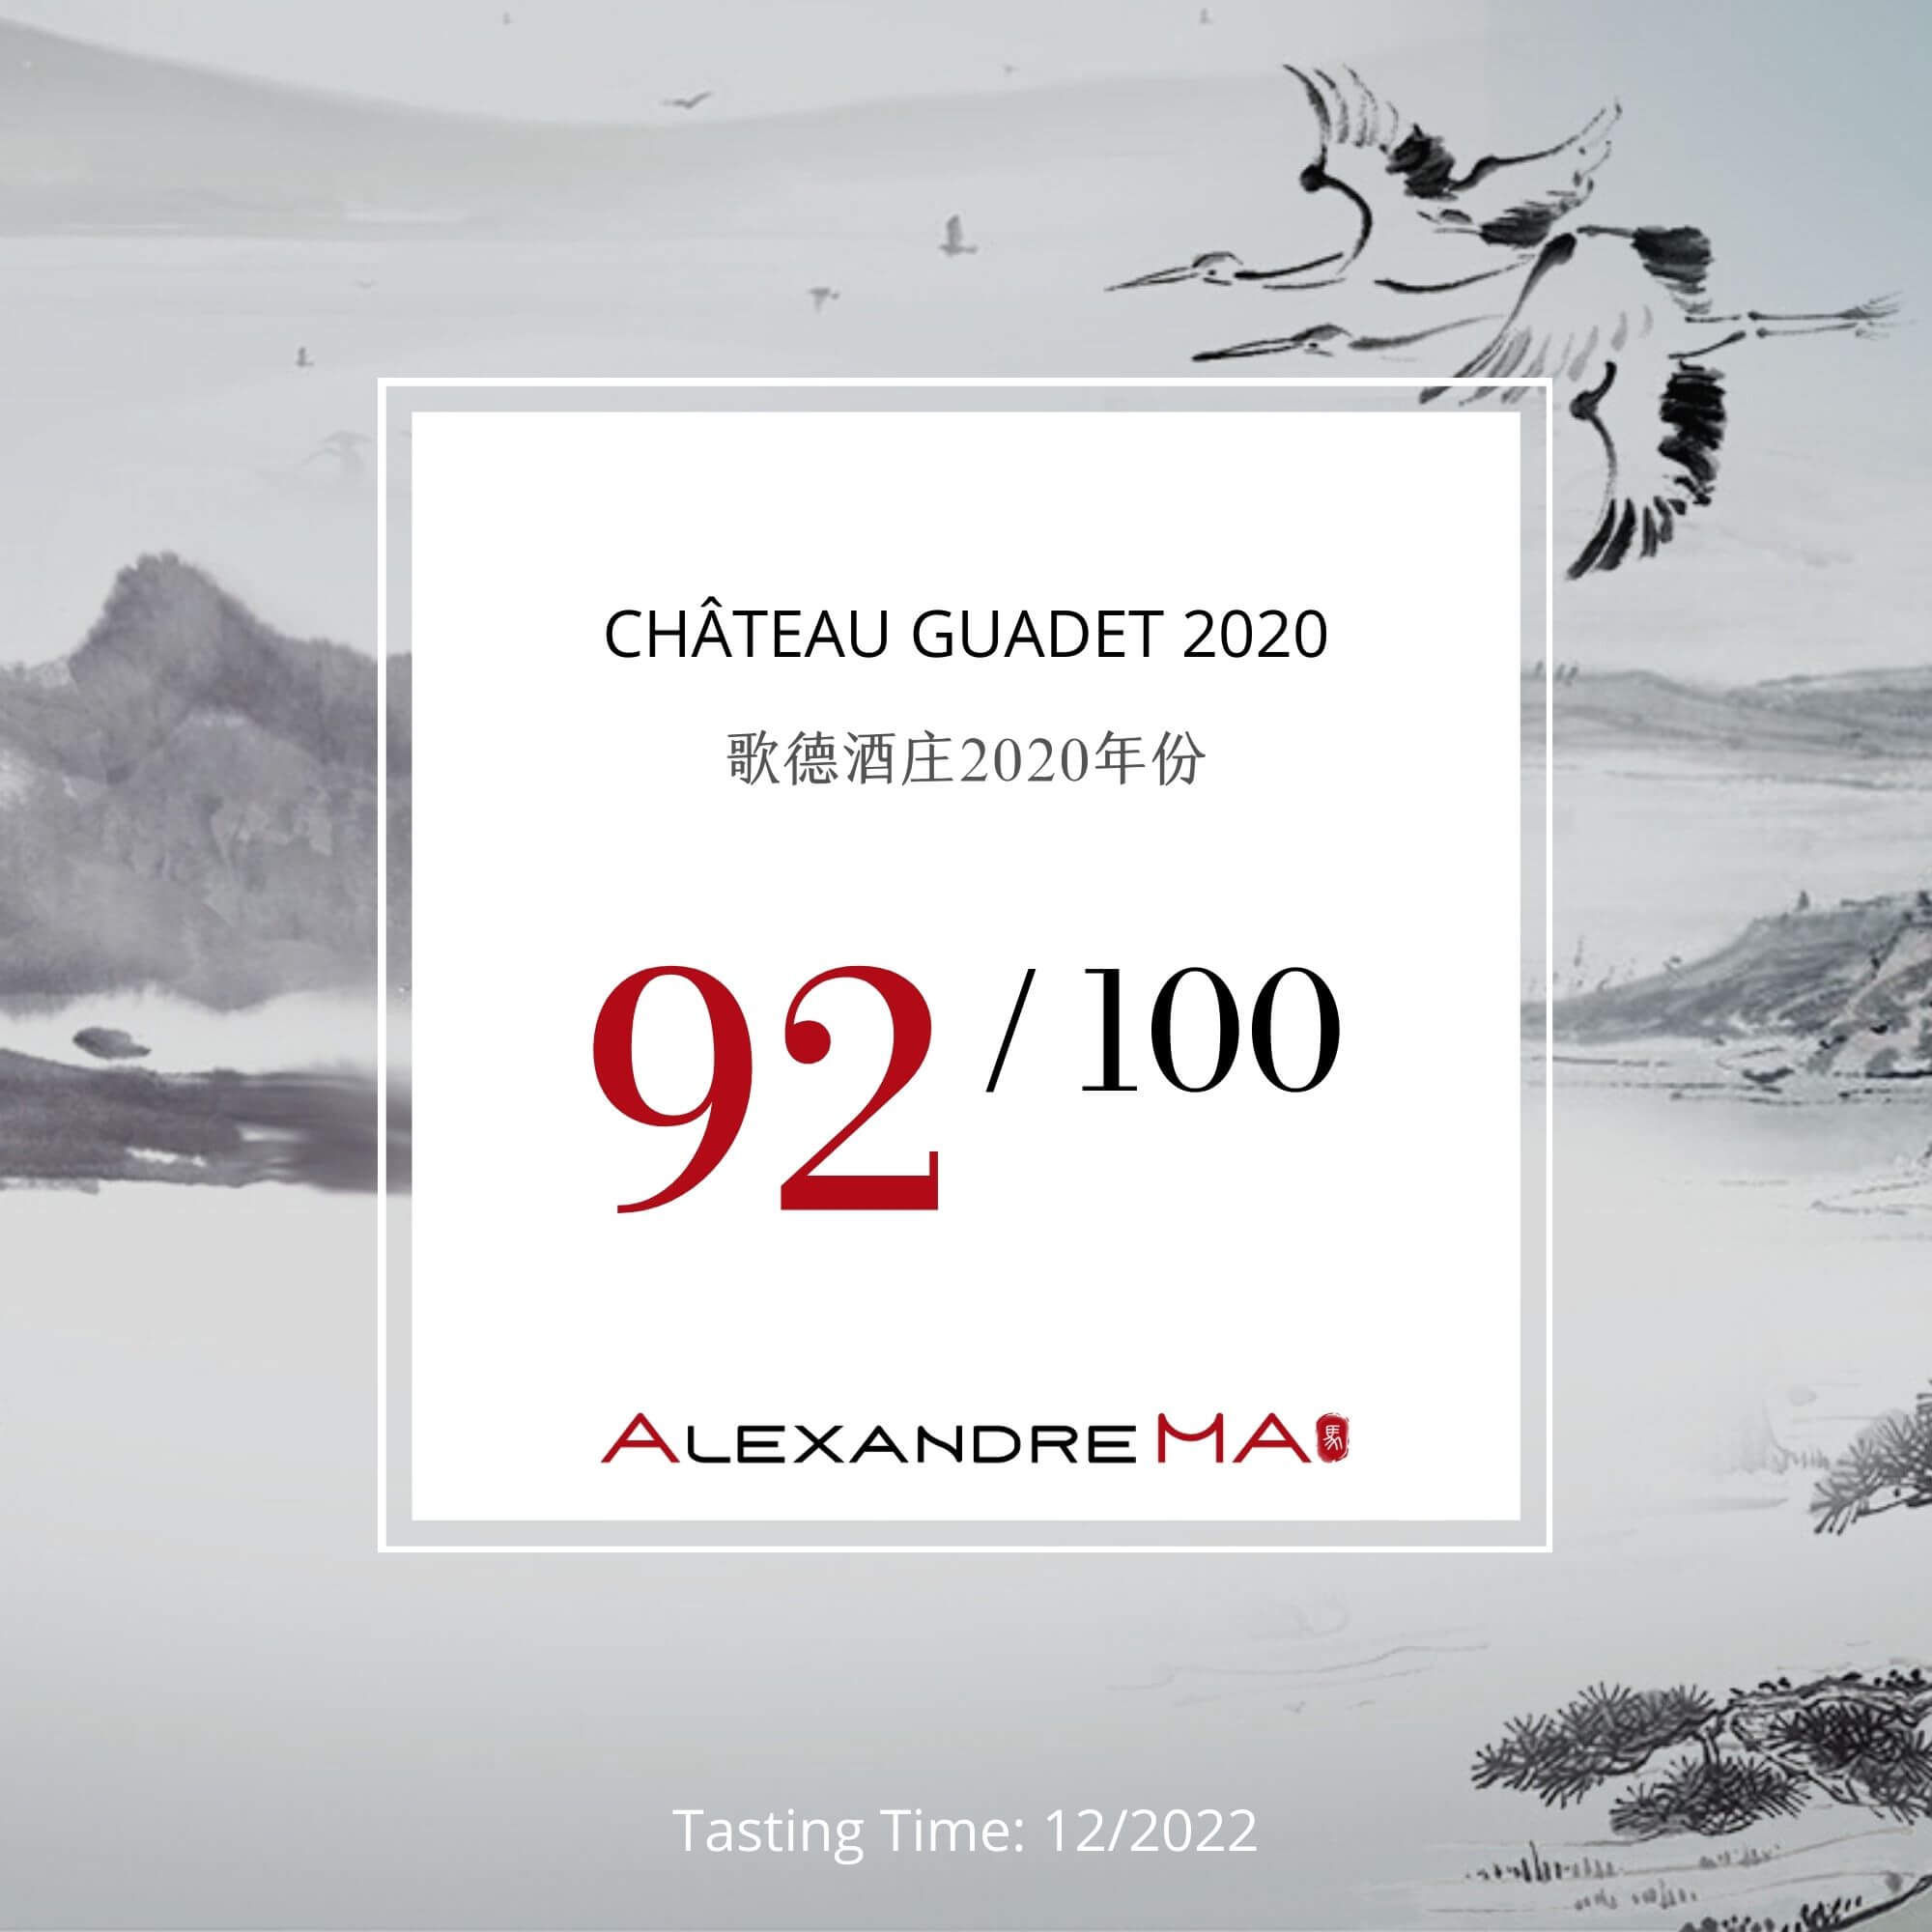 Château Guadet 2020 - Alexandre MA